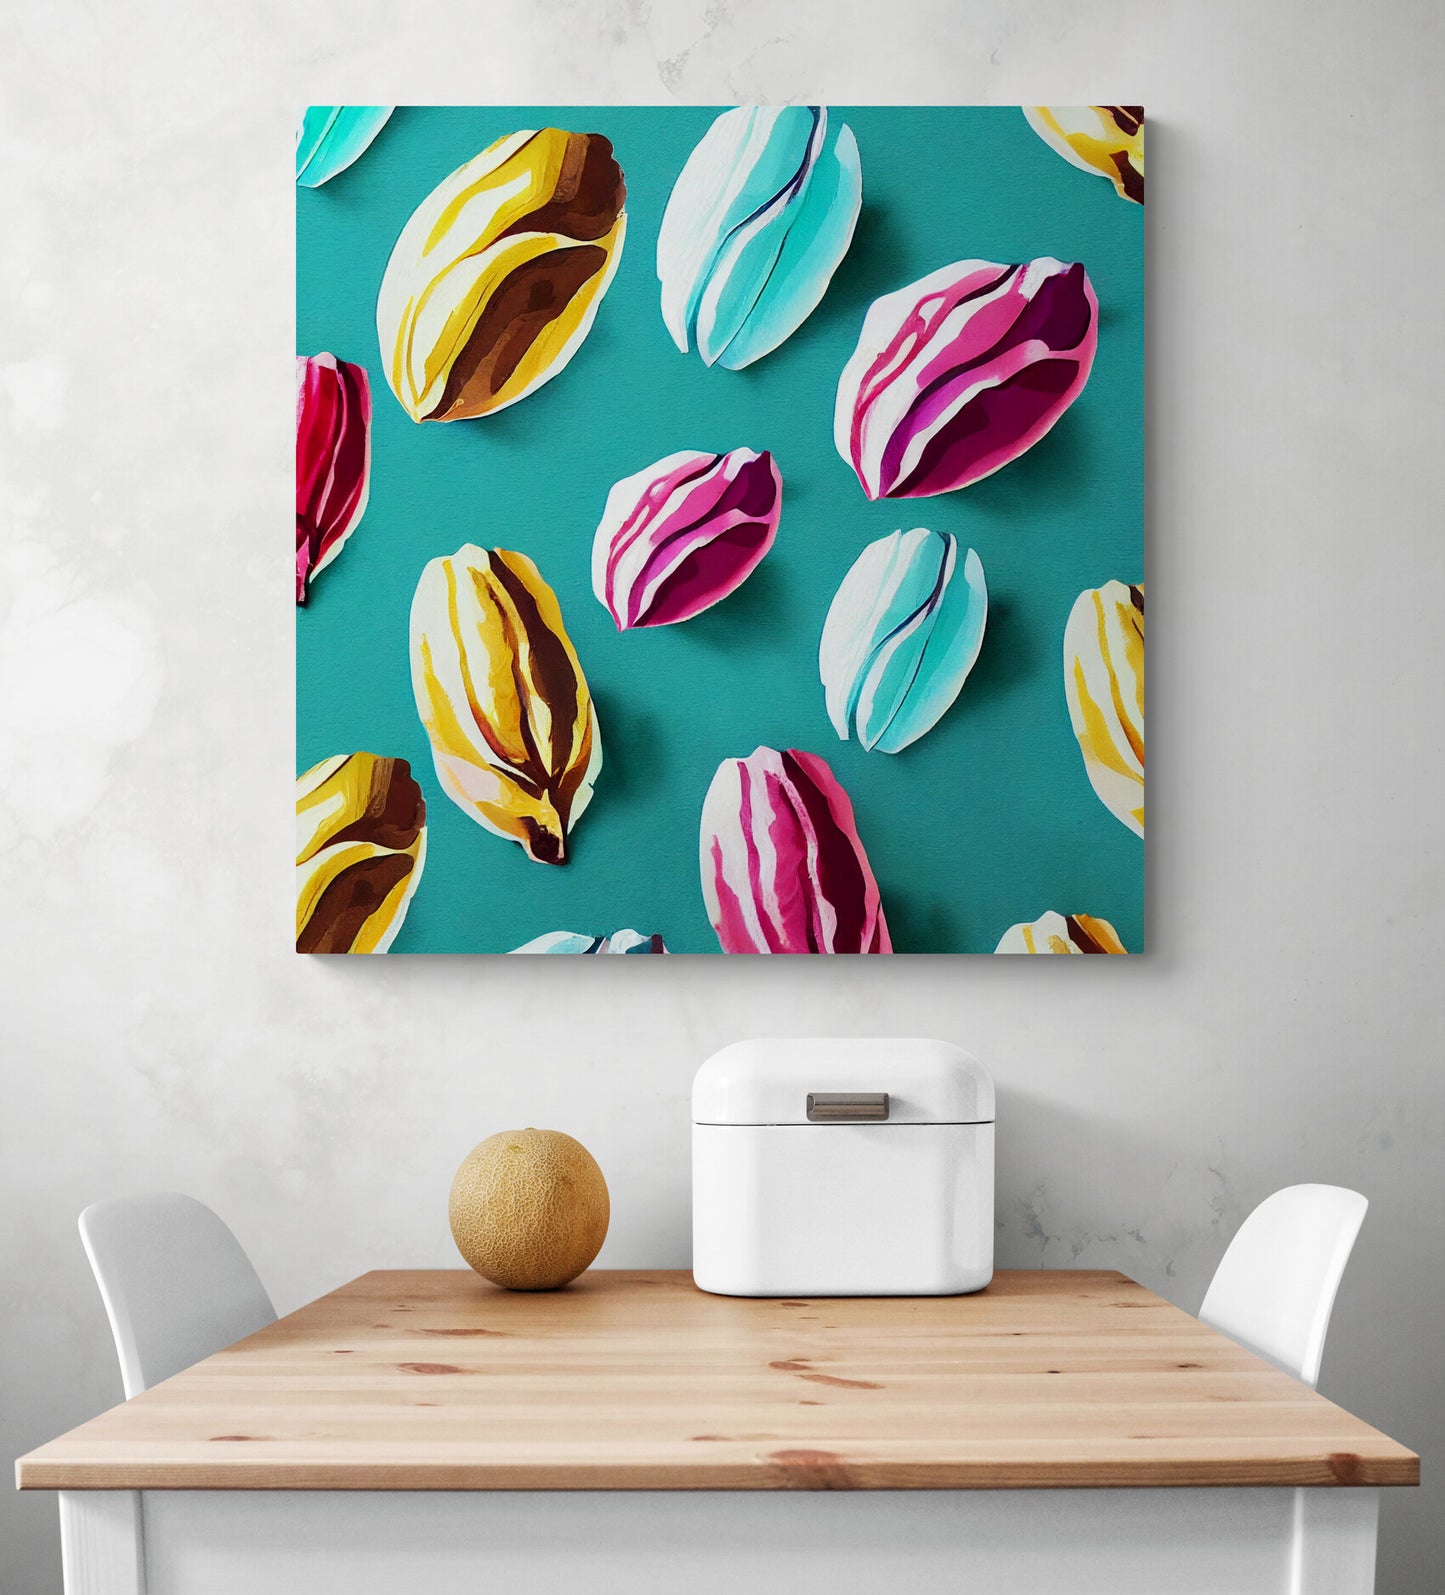 Grand cadre déco de plusieurs cacaos coloré, dans les tons bleu ciel, rose et jaune. Style Nathalie Lété. Le fond est en papier conqueror ajoute une touche de sophistication à cette œuvre.